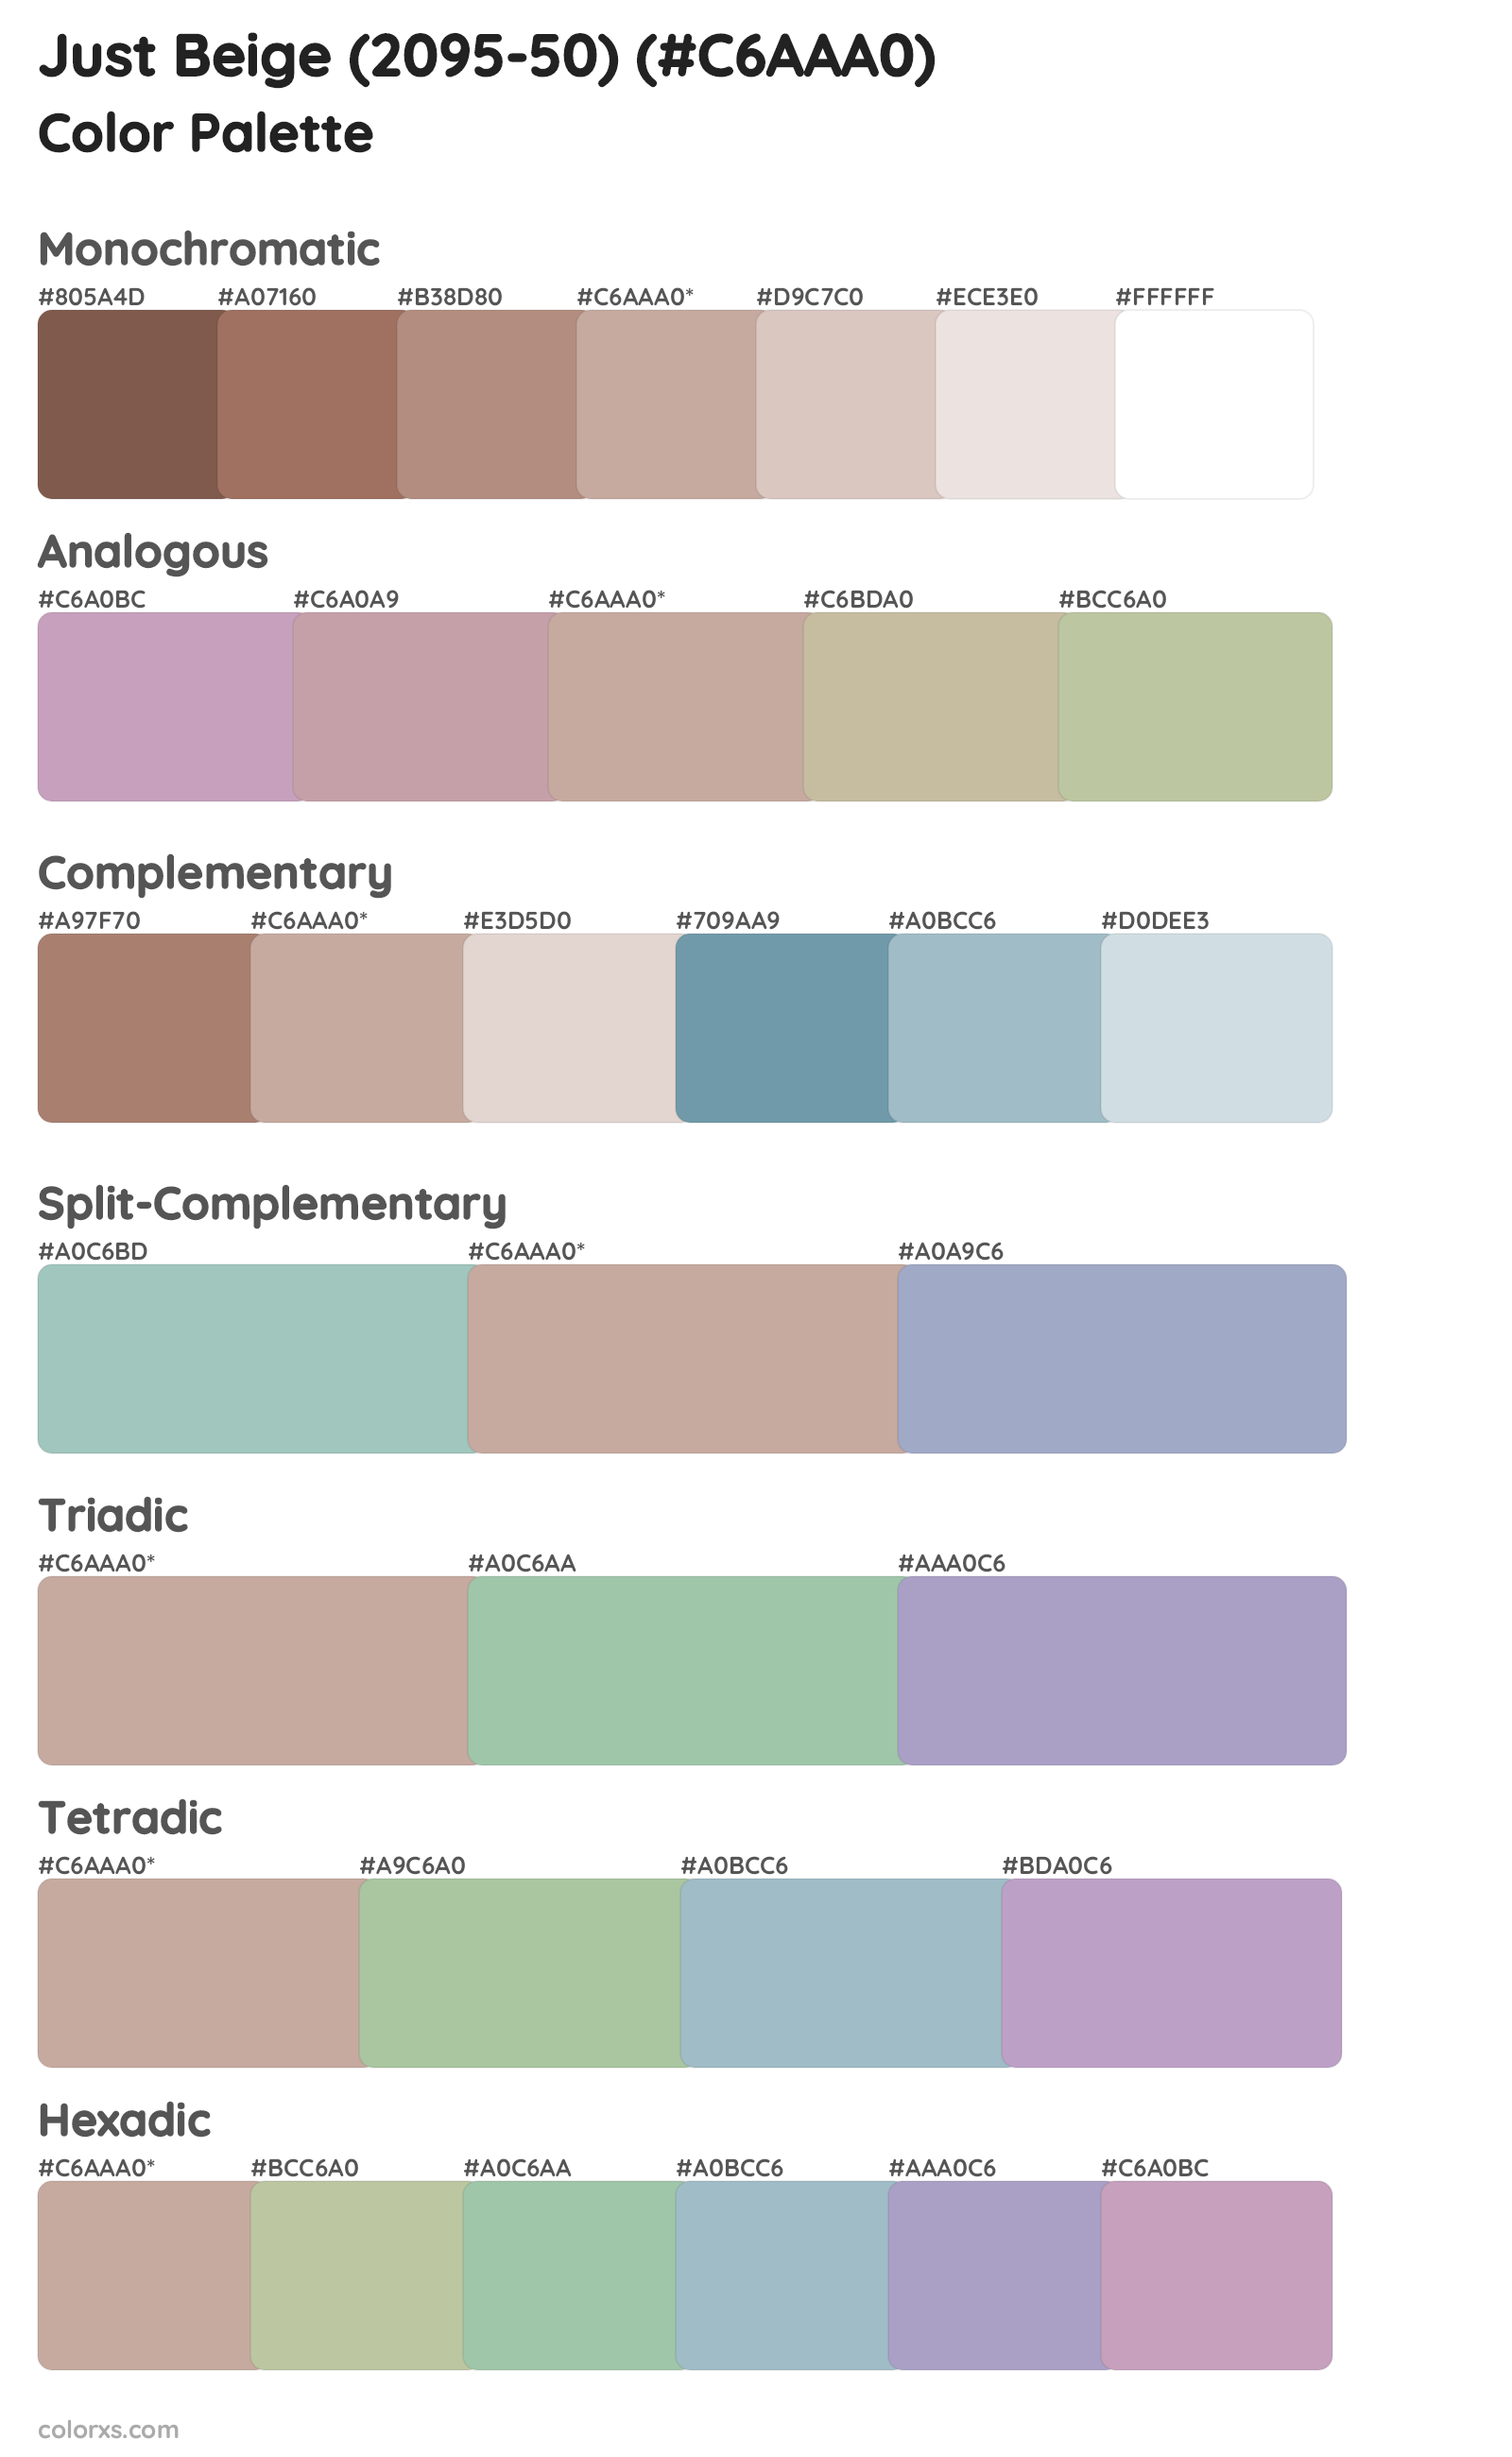 Just Beige (2095-50) Color Scheme Palettes